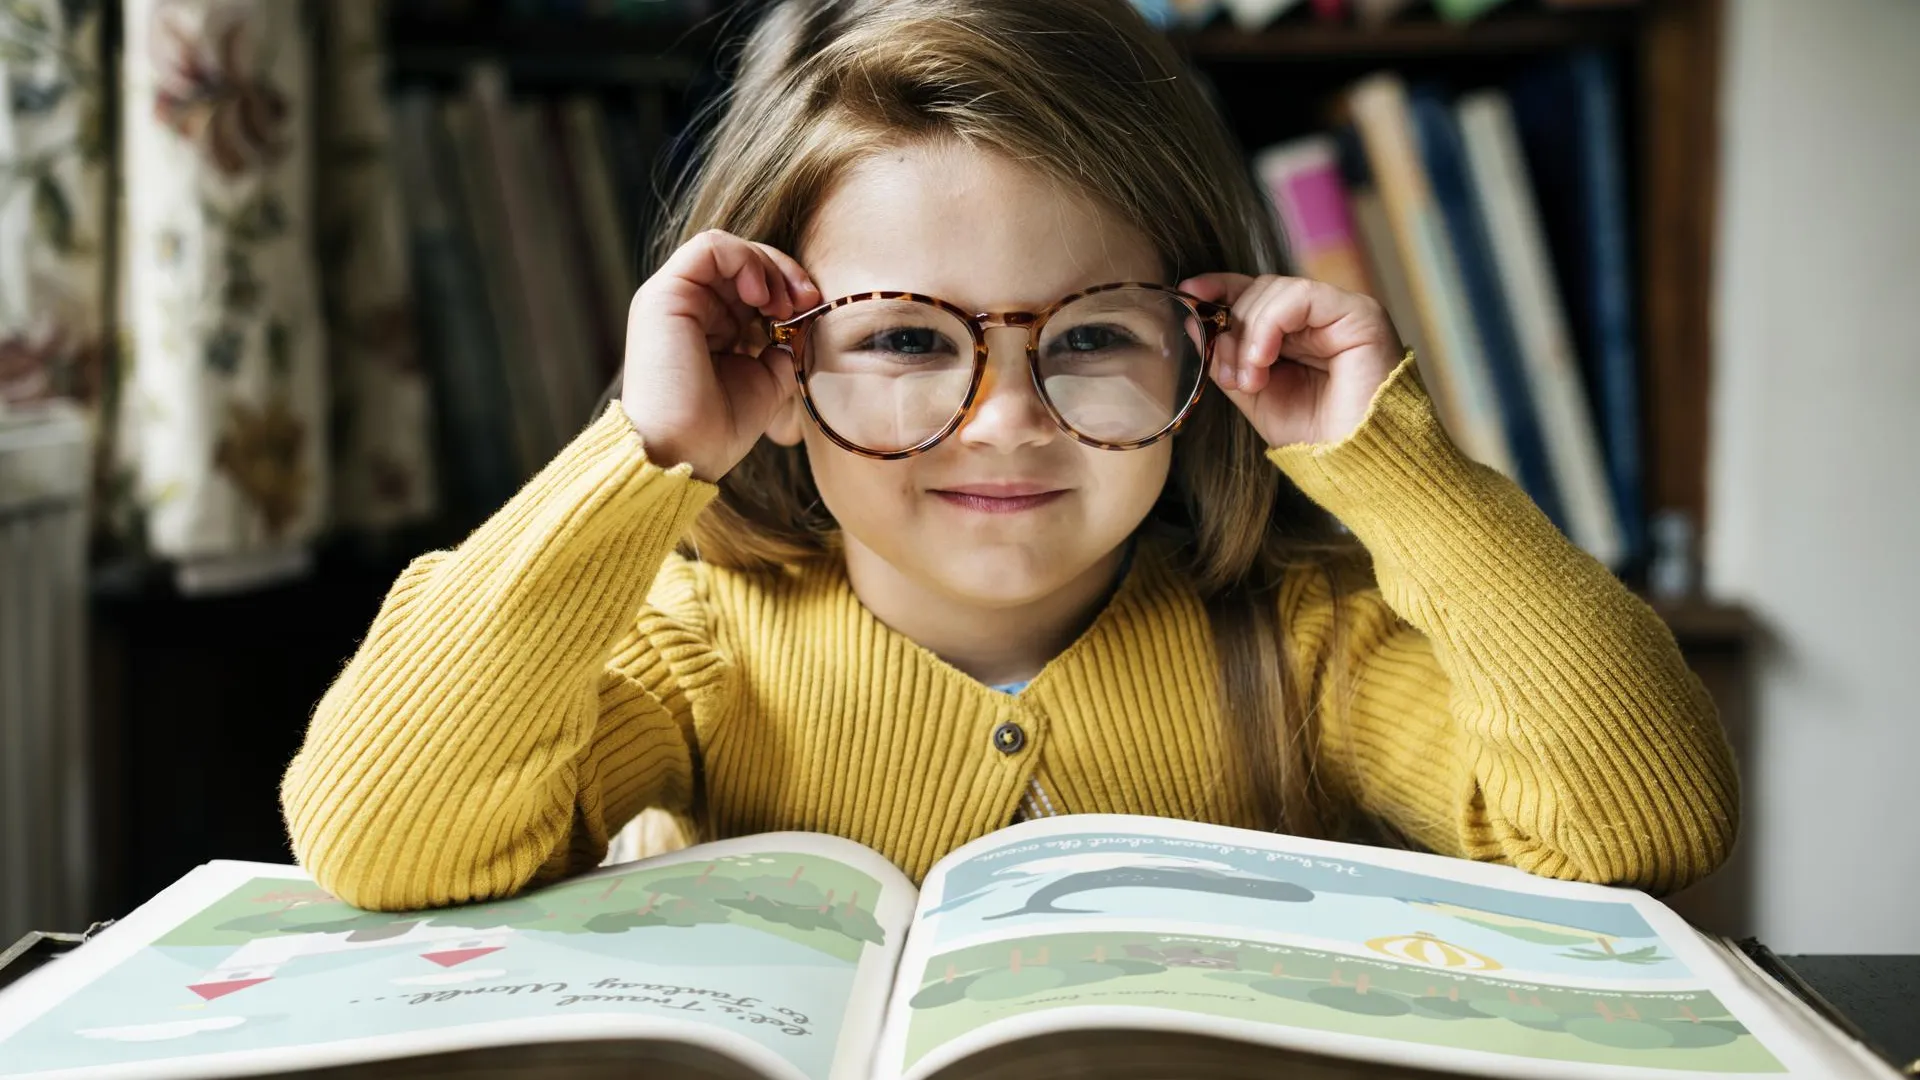 Столичный психолог Преснова дала советы, как привить ребенку любовь к чтению